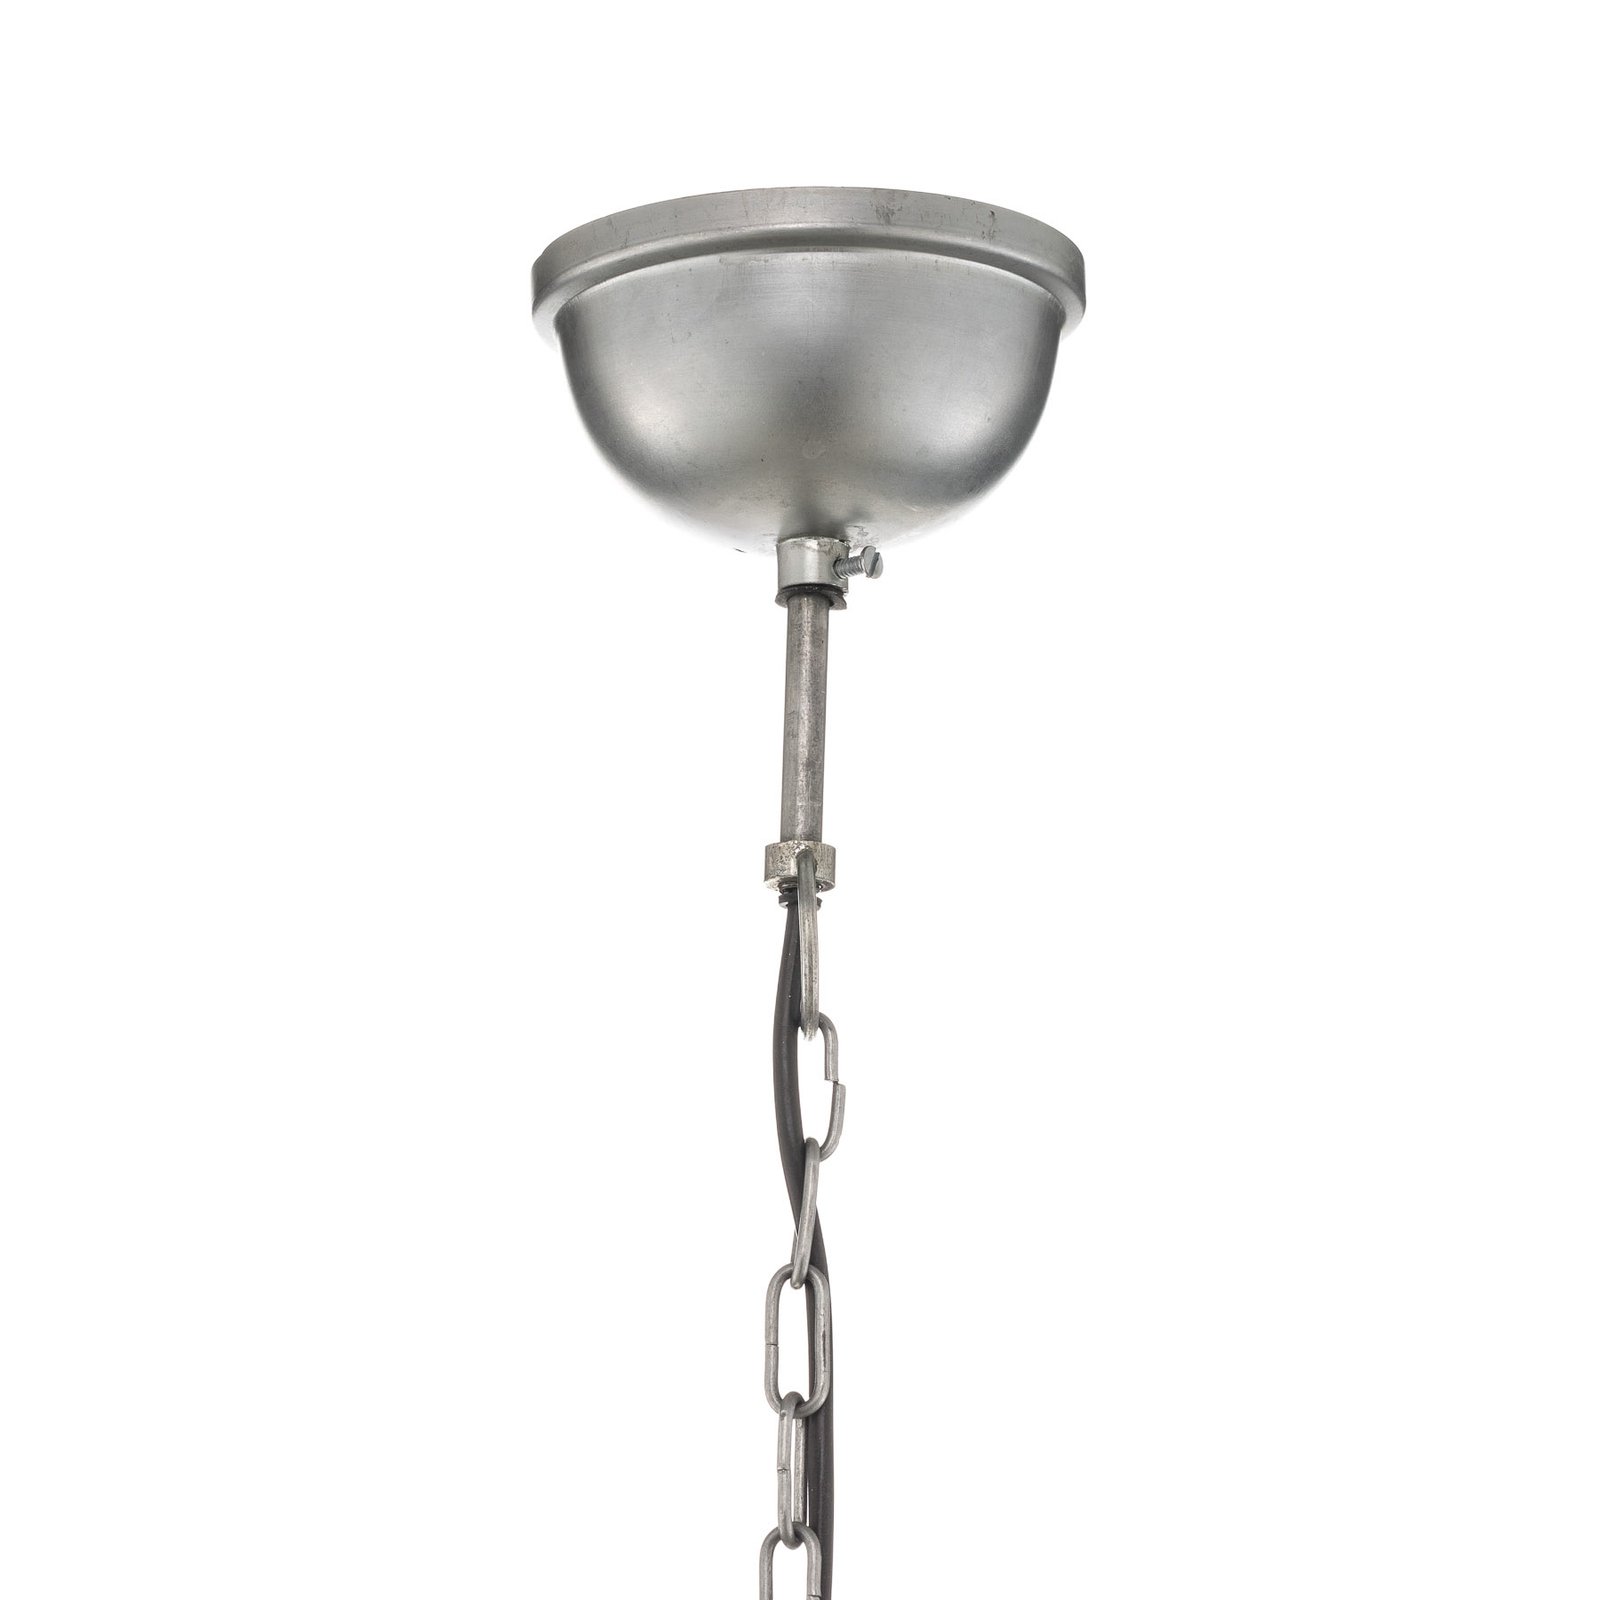 Gabriel hængelampe i industridesign, Ø 40 cm